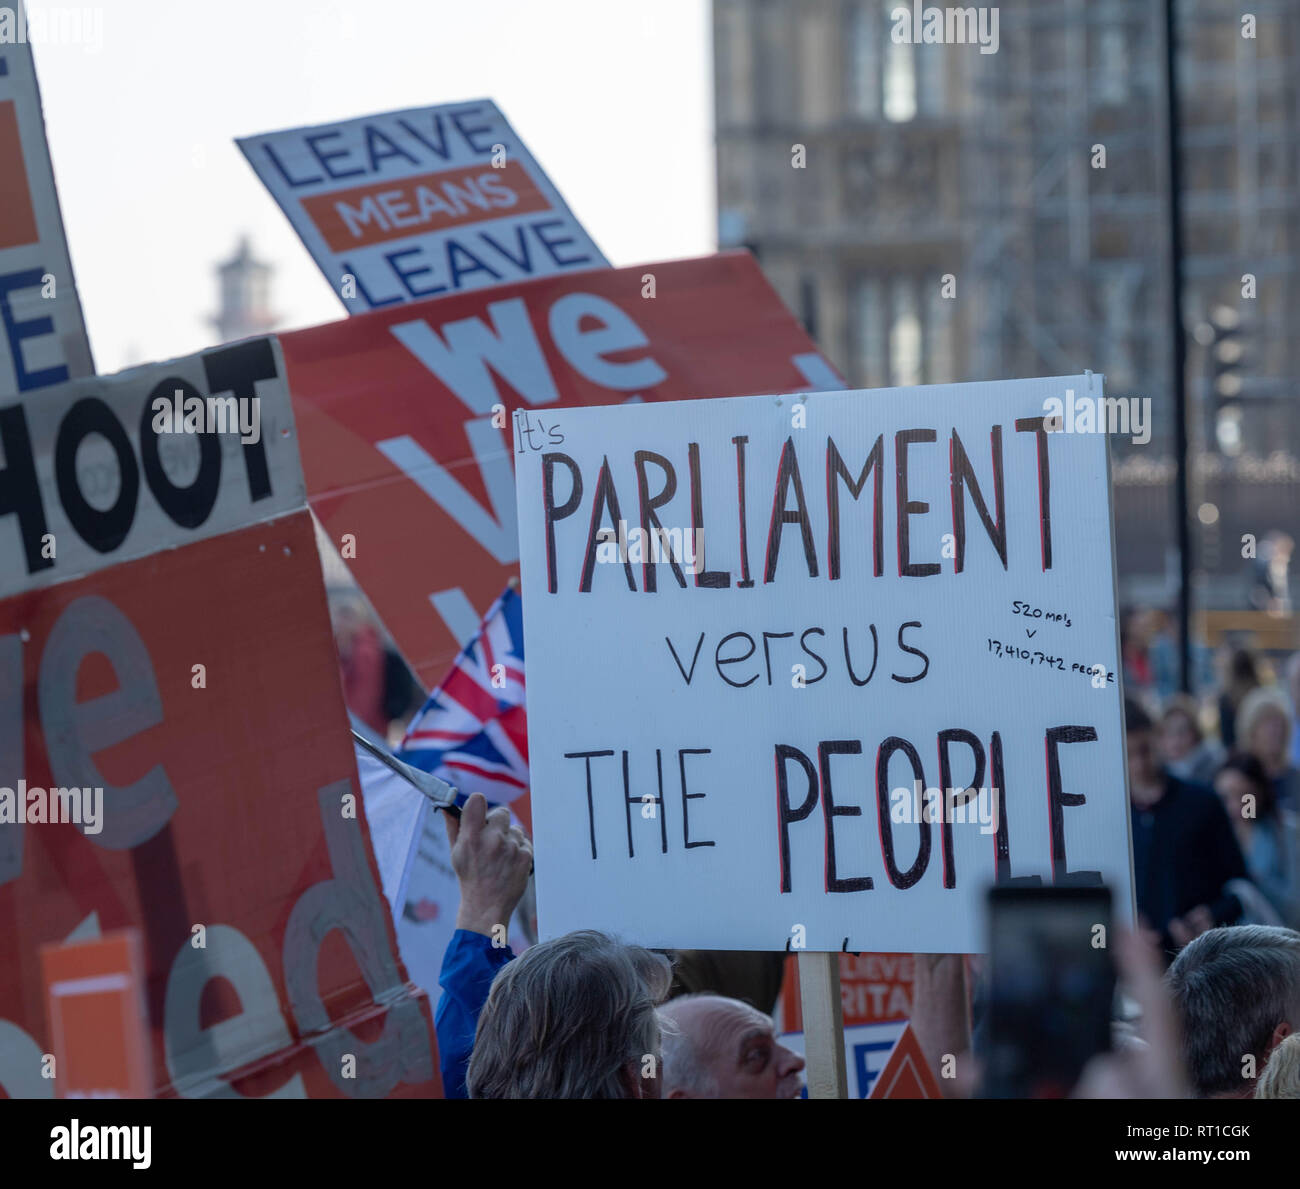 Londres 27 février 2019 manifestants pro et anti Brexit ont pris part à un certain nombre de rassemblements et marches courtes à différents endroits dans un parlement de Westminster le peuple contre l'étendard de la protestation à l'extérieur du groupe pro brexit portcullis house Crédit lonon Ian Davidson/Alamy Live News Banque D'Images